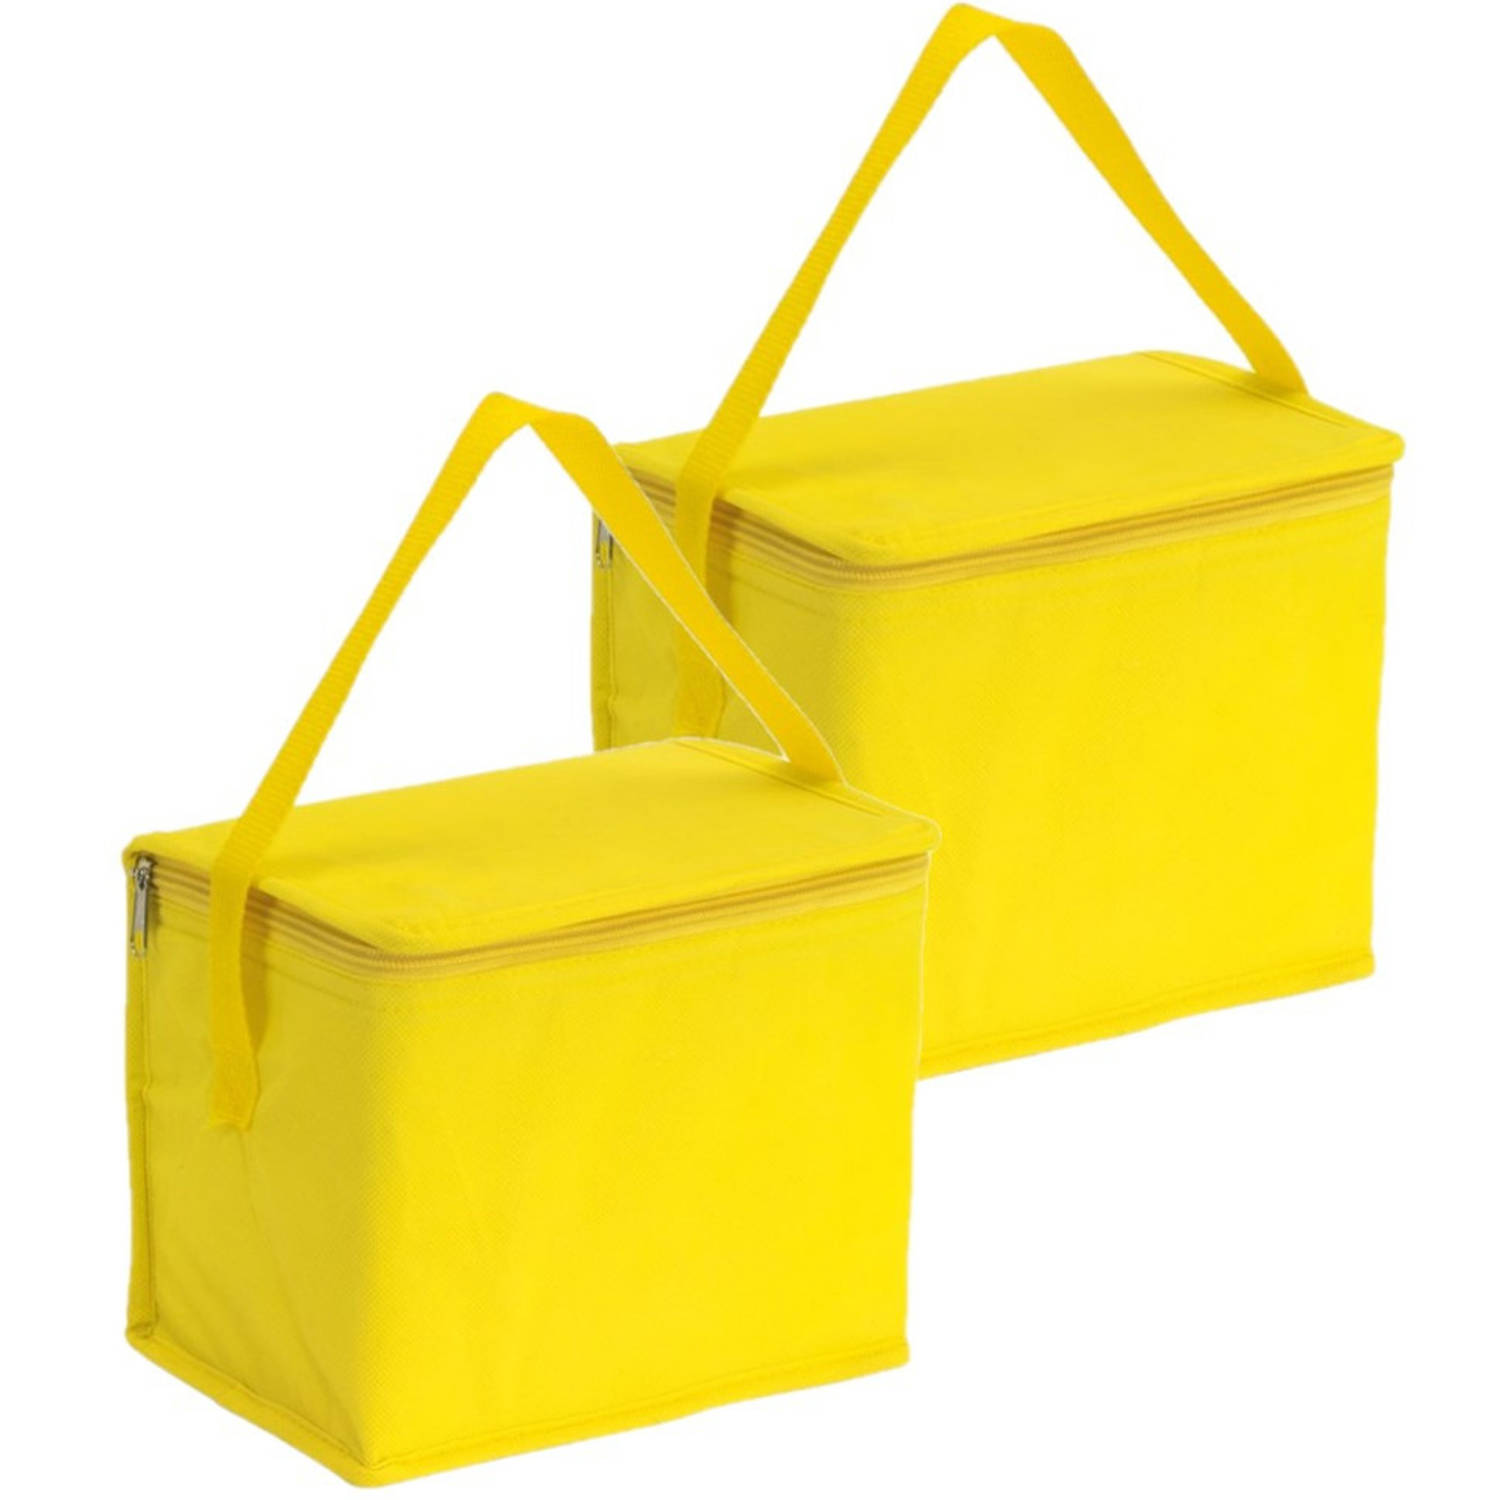 2x stuks kleine koeltassen voor lunch geel 20 x 13 x 17 cm 4.5 liter - Koeltas